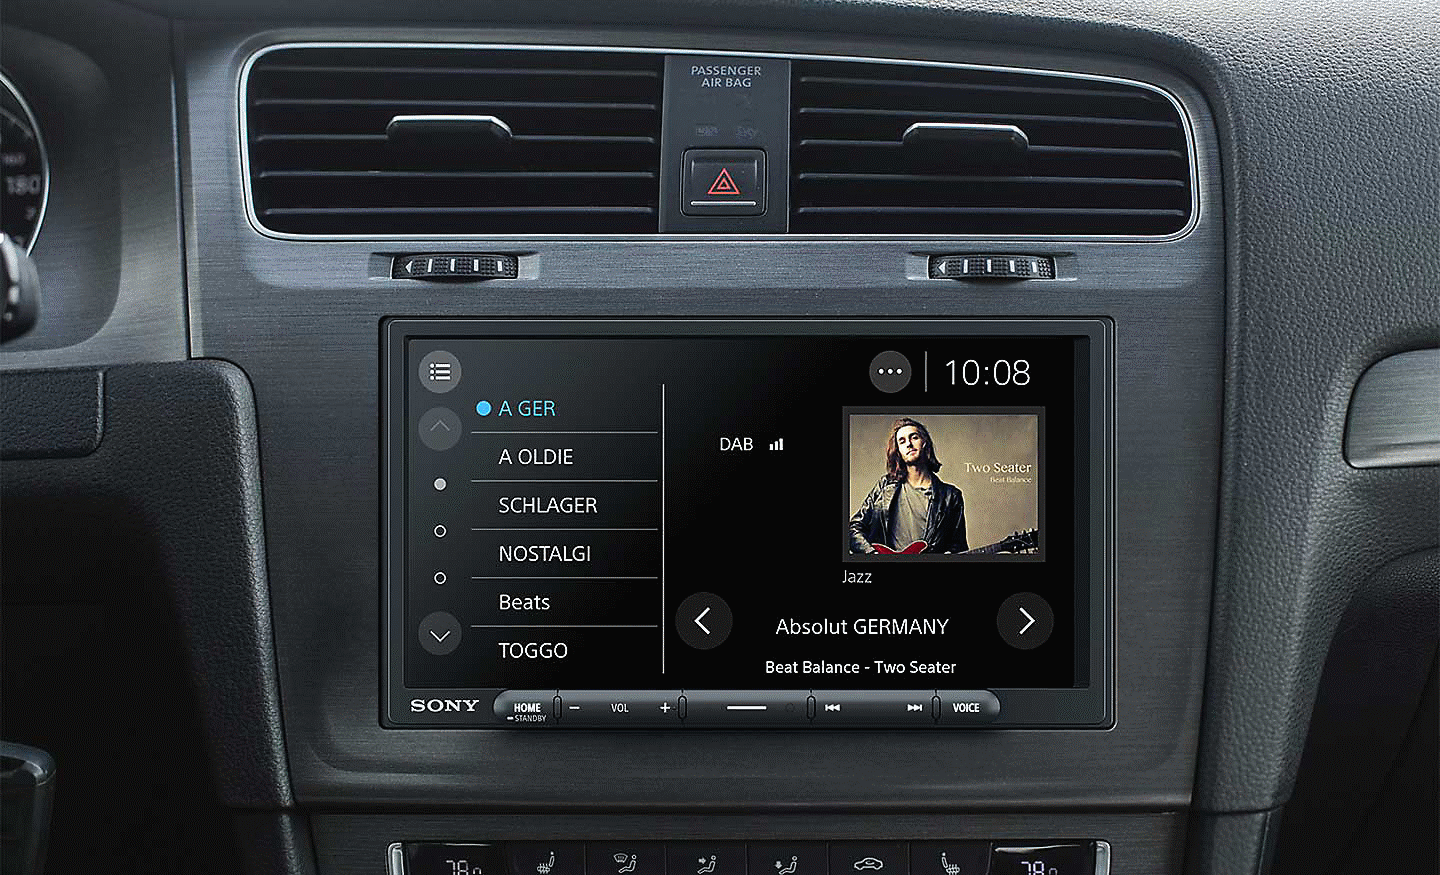 Slika XAV-AX4050 na armaturni plošči z vmesnikom radia DAB na zaslonu